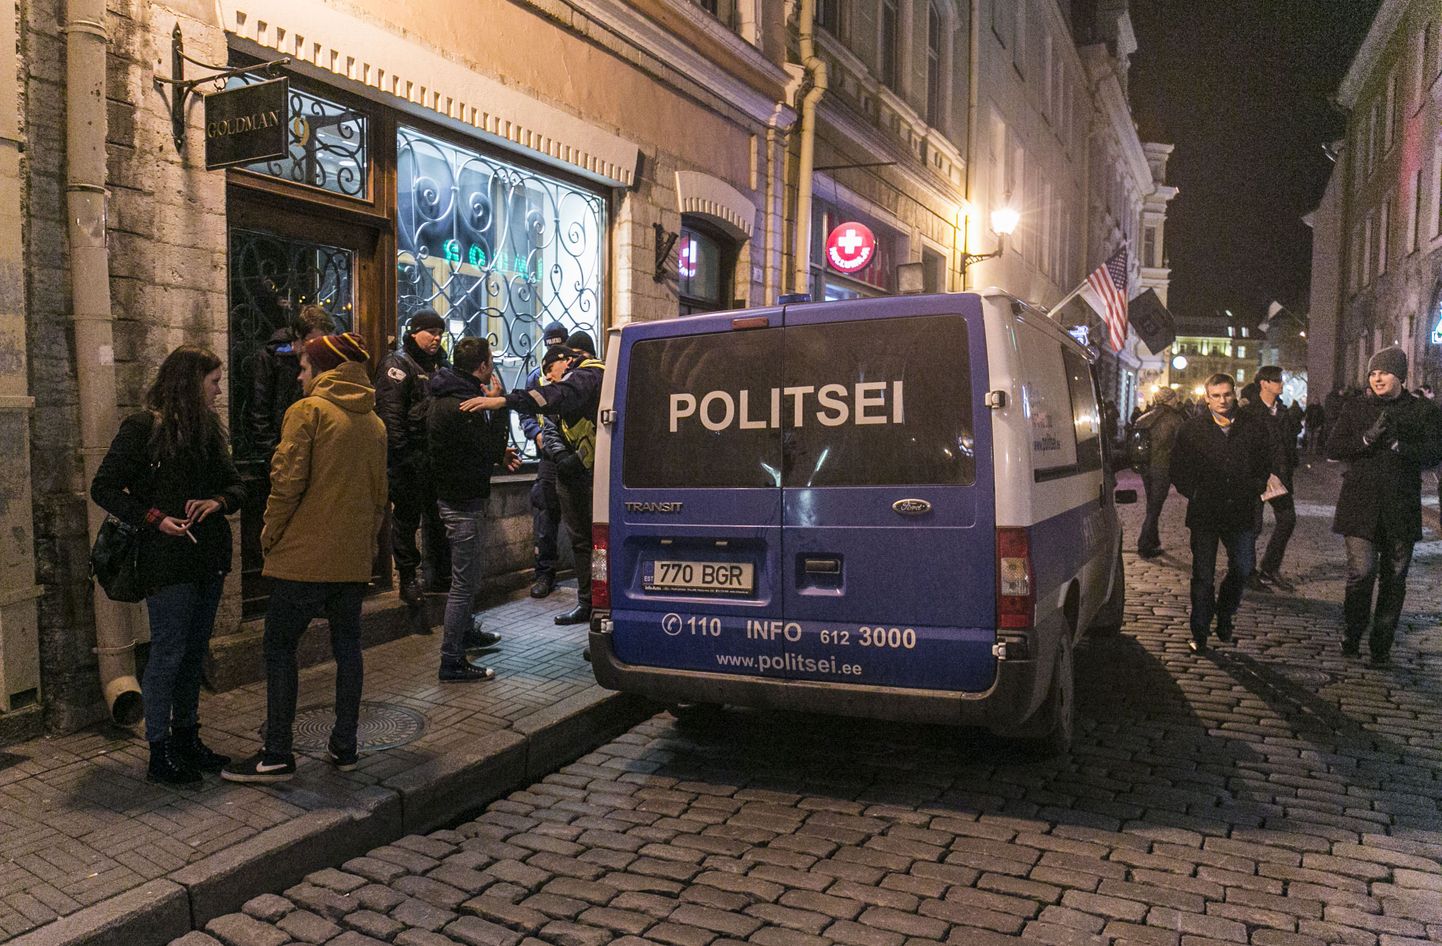 Tallinna vanalinnas toimud peol käis kohal ka politsei, kuid rikkumisi ei tuvastanud. Foto on illustratiivne.